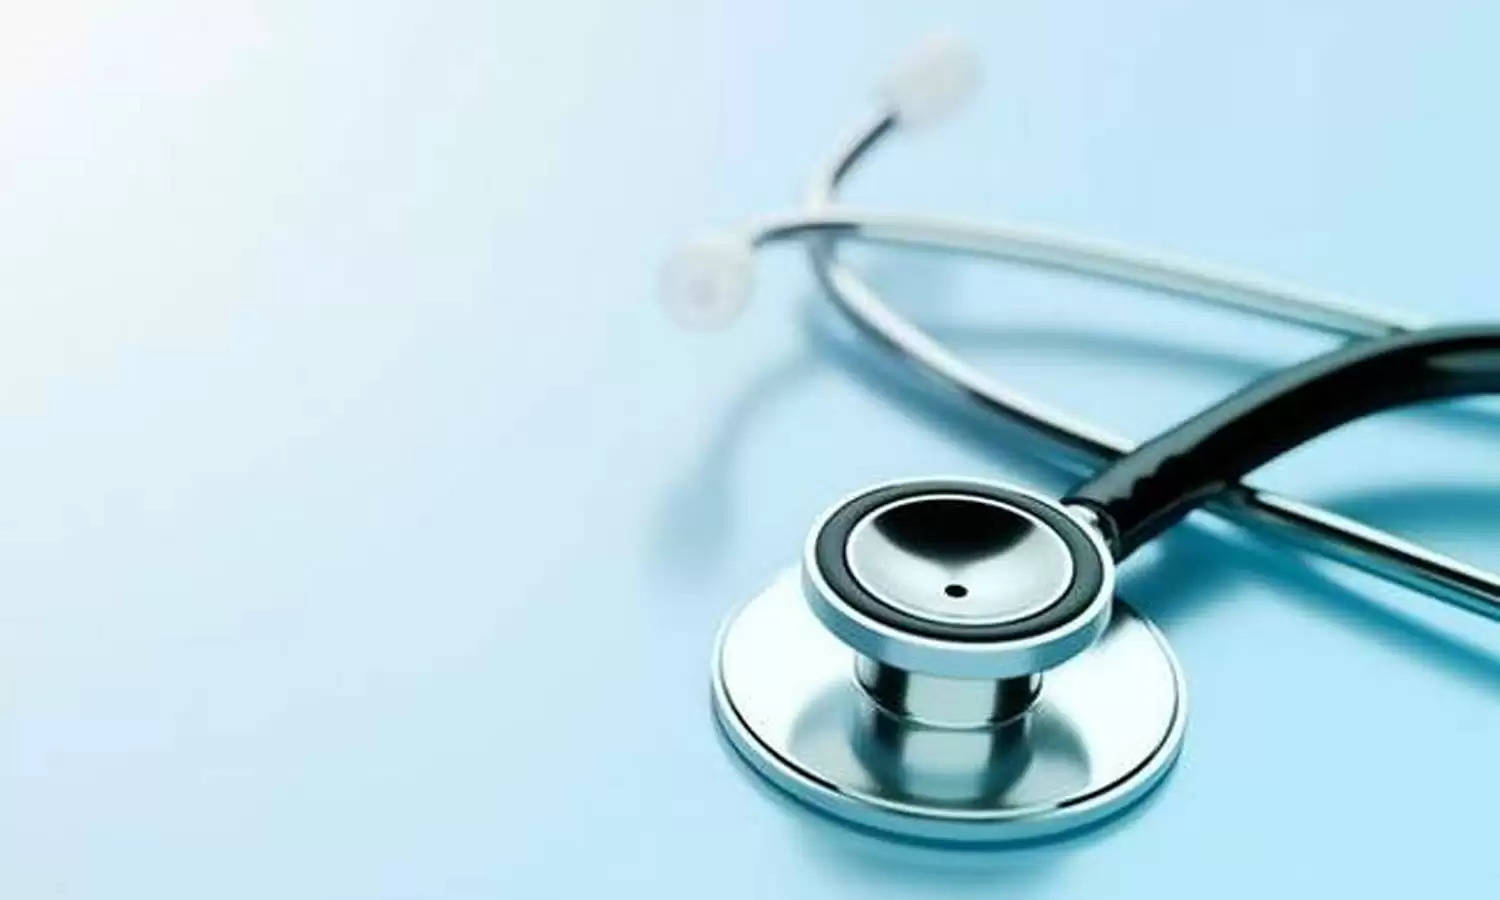 मध्य प्रदेश लोक सेवा आयोग ने हड्डी रोग विशेषज्ञ के 57 पदों पर भर्ती जारी, उम्मीदवार 7 अक्टूबर तक आवेदन करें